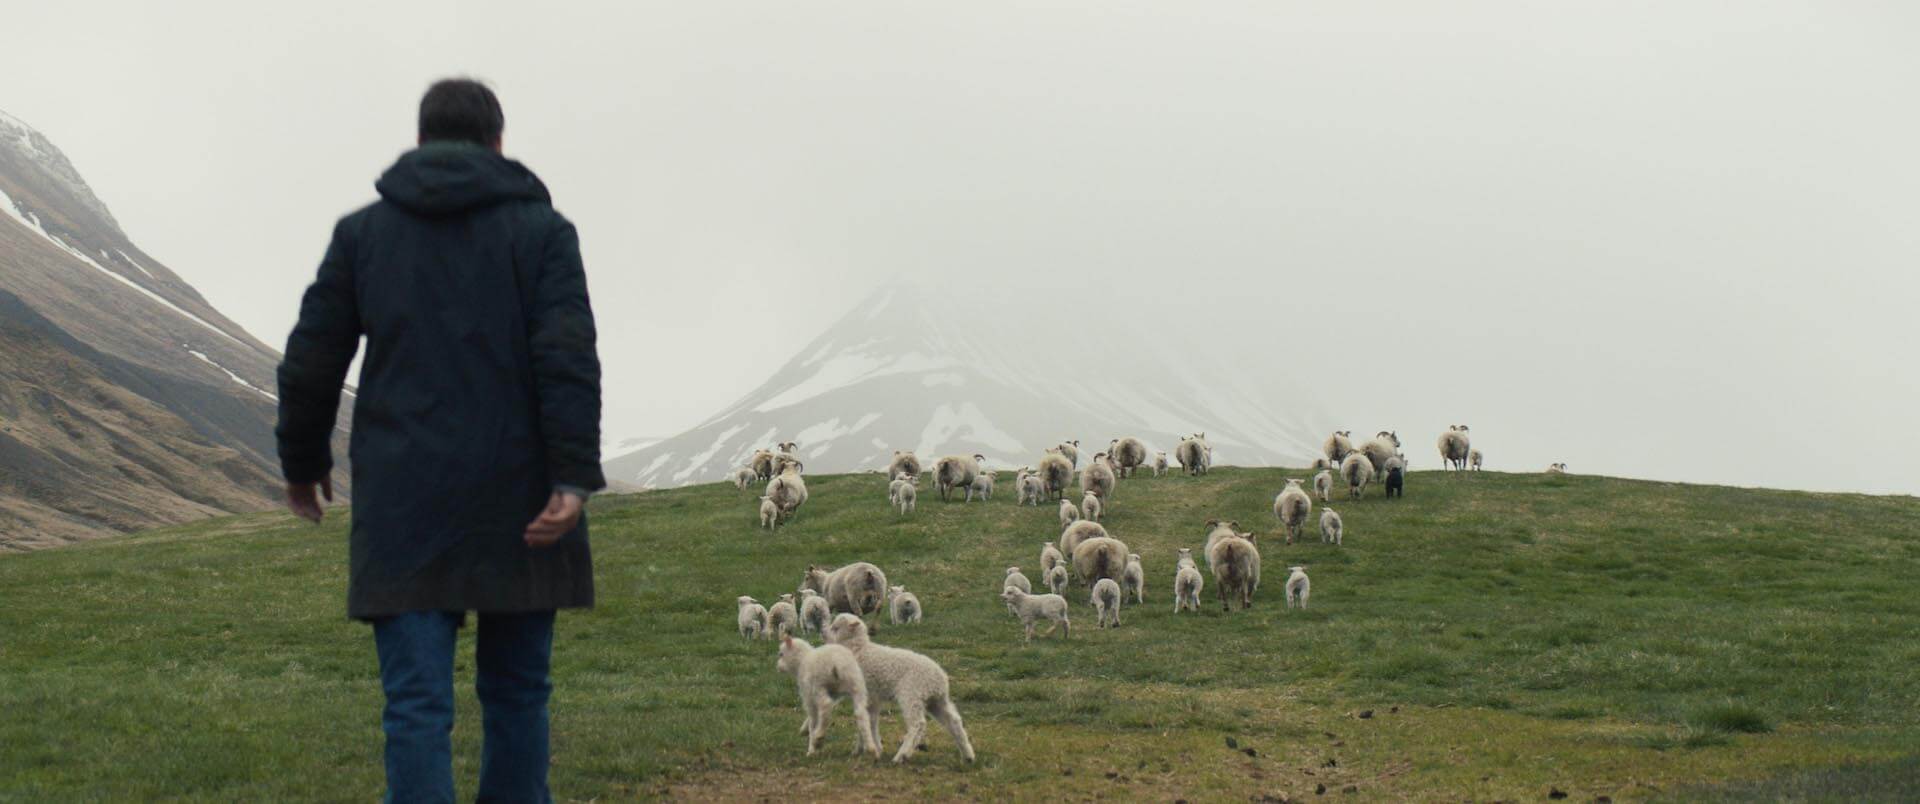 “羊ではない何か”の姿を収めた写真が初お披露目！映画『LAMB／ラム』新場面写真が解禁 film220704_lamb-04